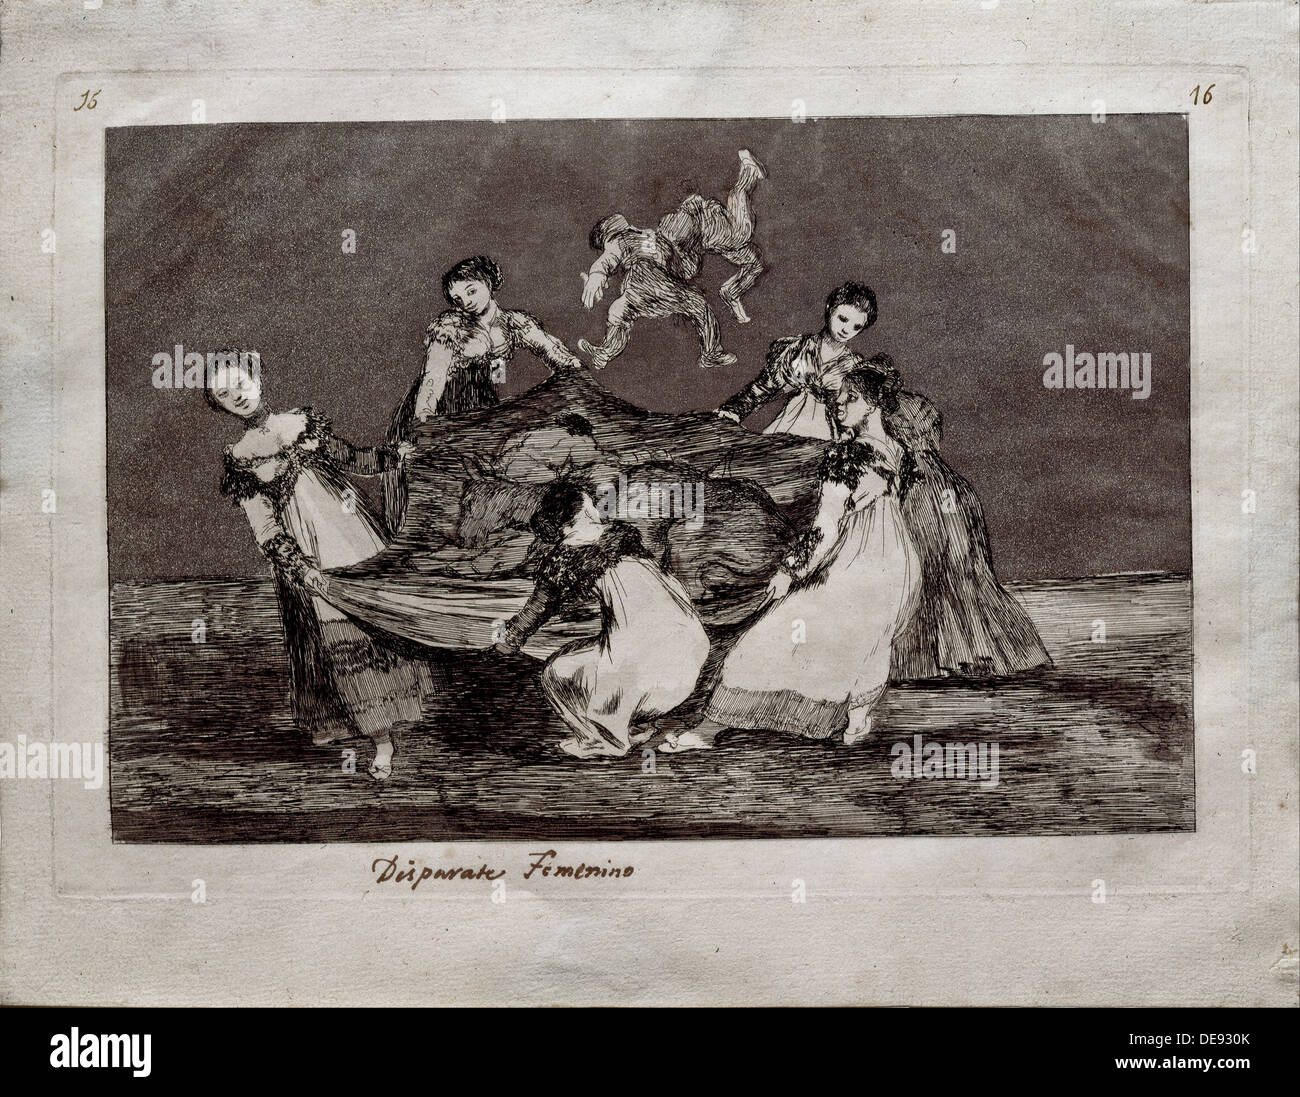 Folie féminine (de la série Los disparates (Follies), 1815-1819. Artiste : Goya, Francisco de (1746-1828) Banque D'Images